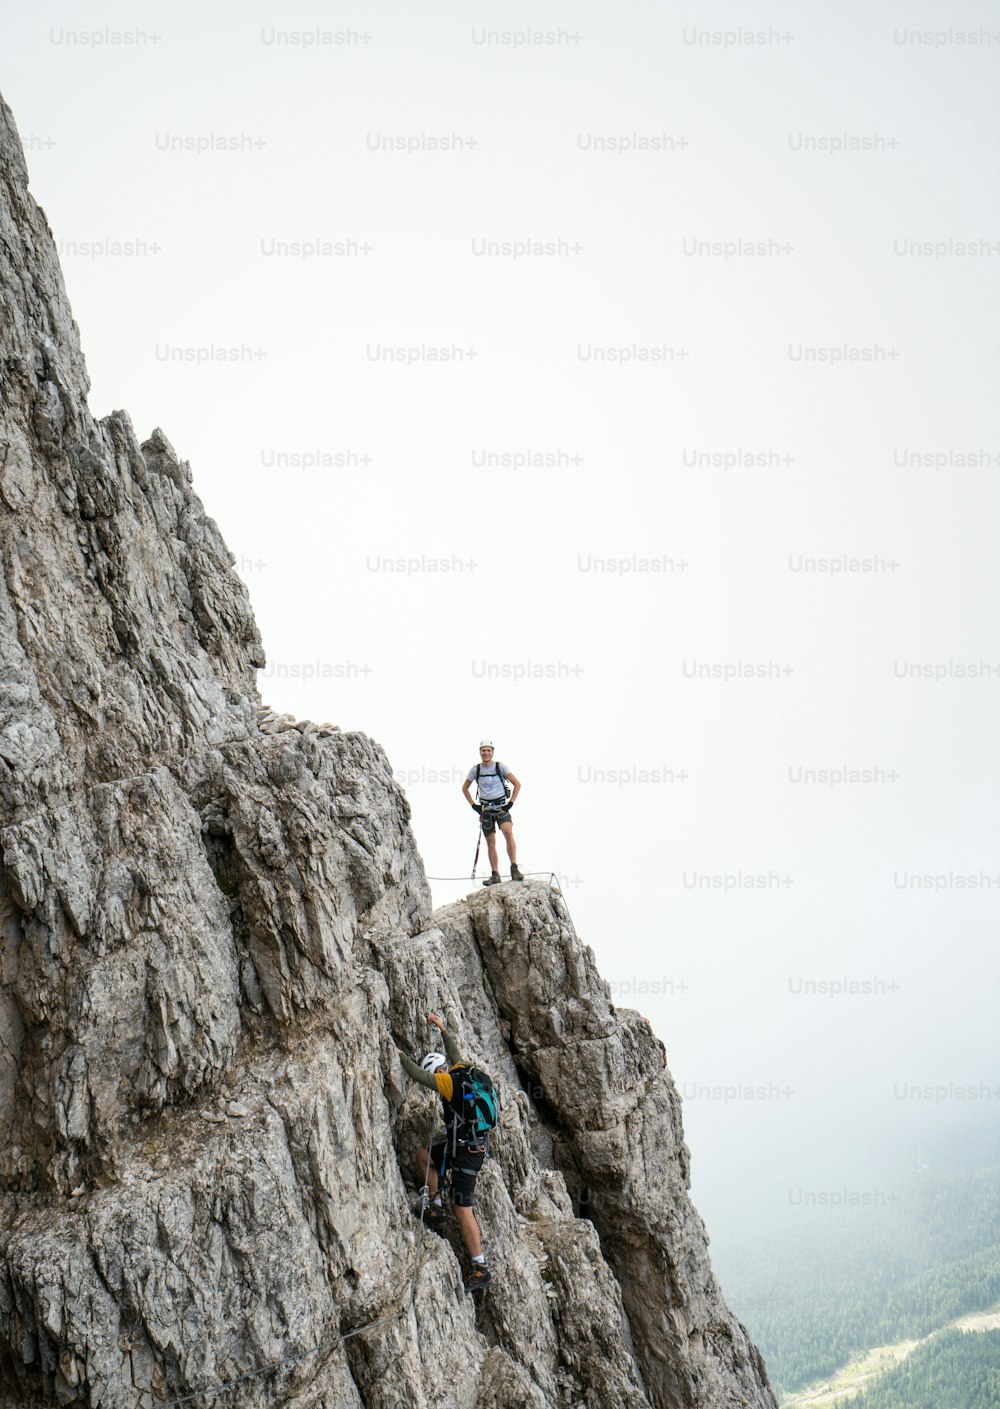 deux jeunes alpinistes masculins attrayants sur une Via Ferrata très exposée à Alta Badia dans les Dolomites italiennes